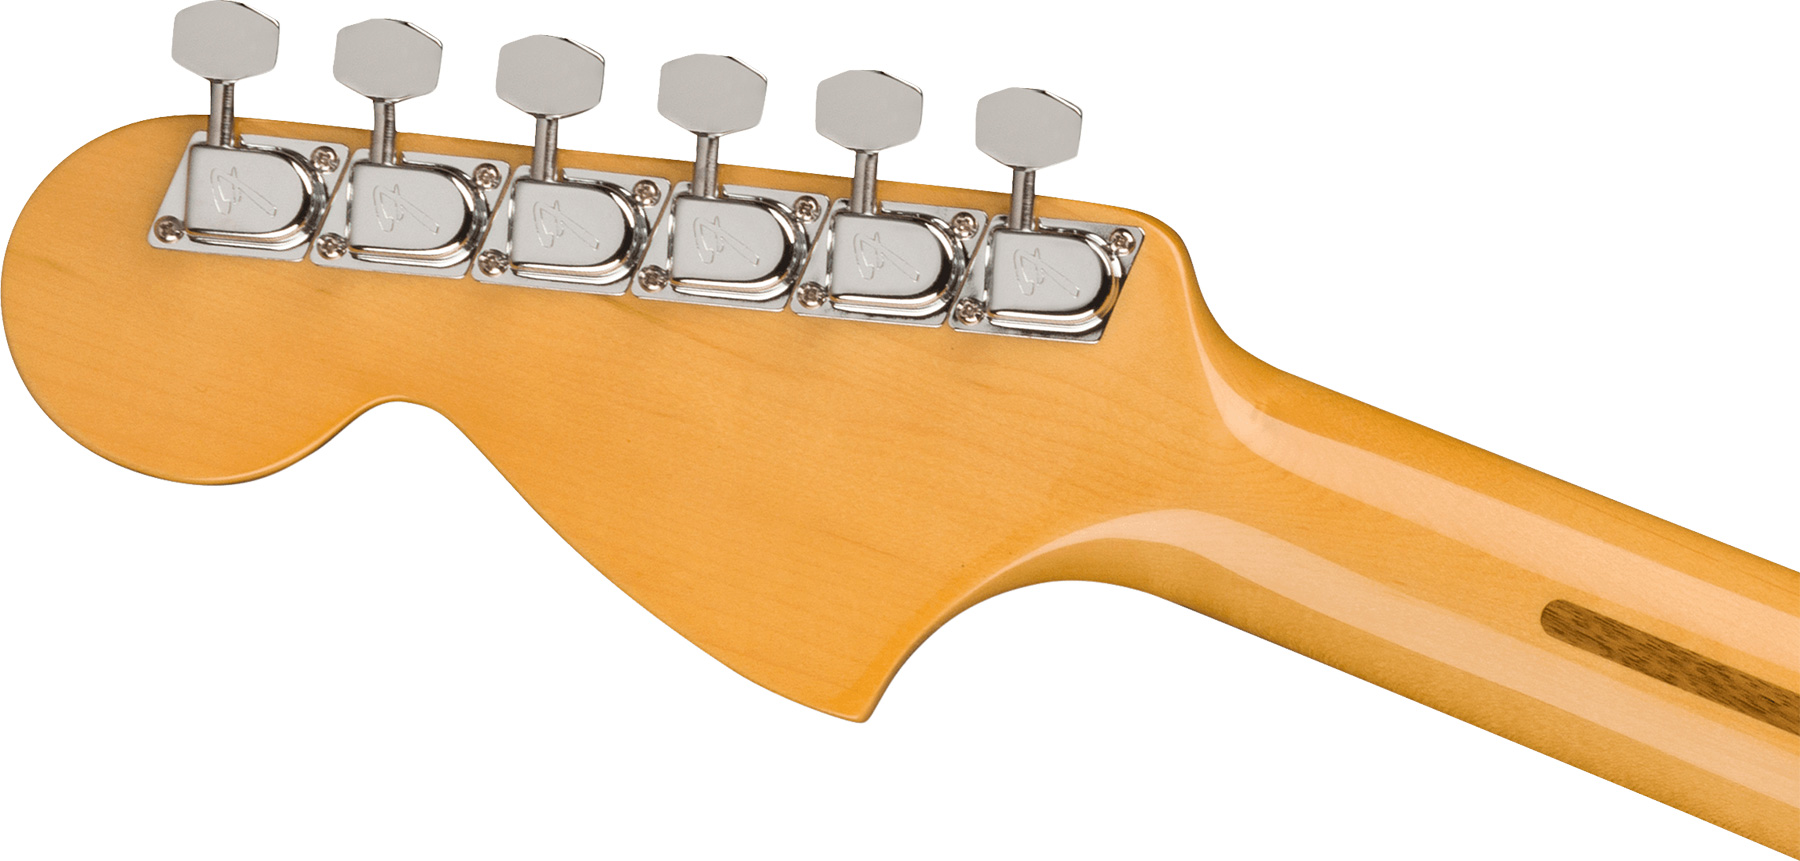 Fender Strat 1973 American Vintage Ii Usa 3s Trem Mn - Mocha - E-Gitarre in Str-Form - Variation 3